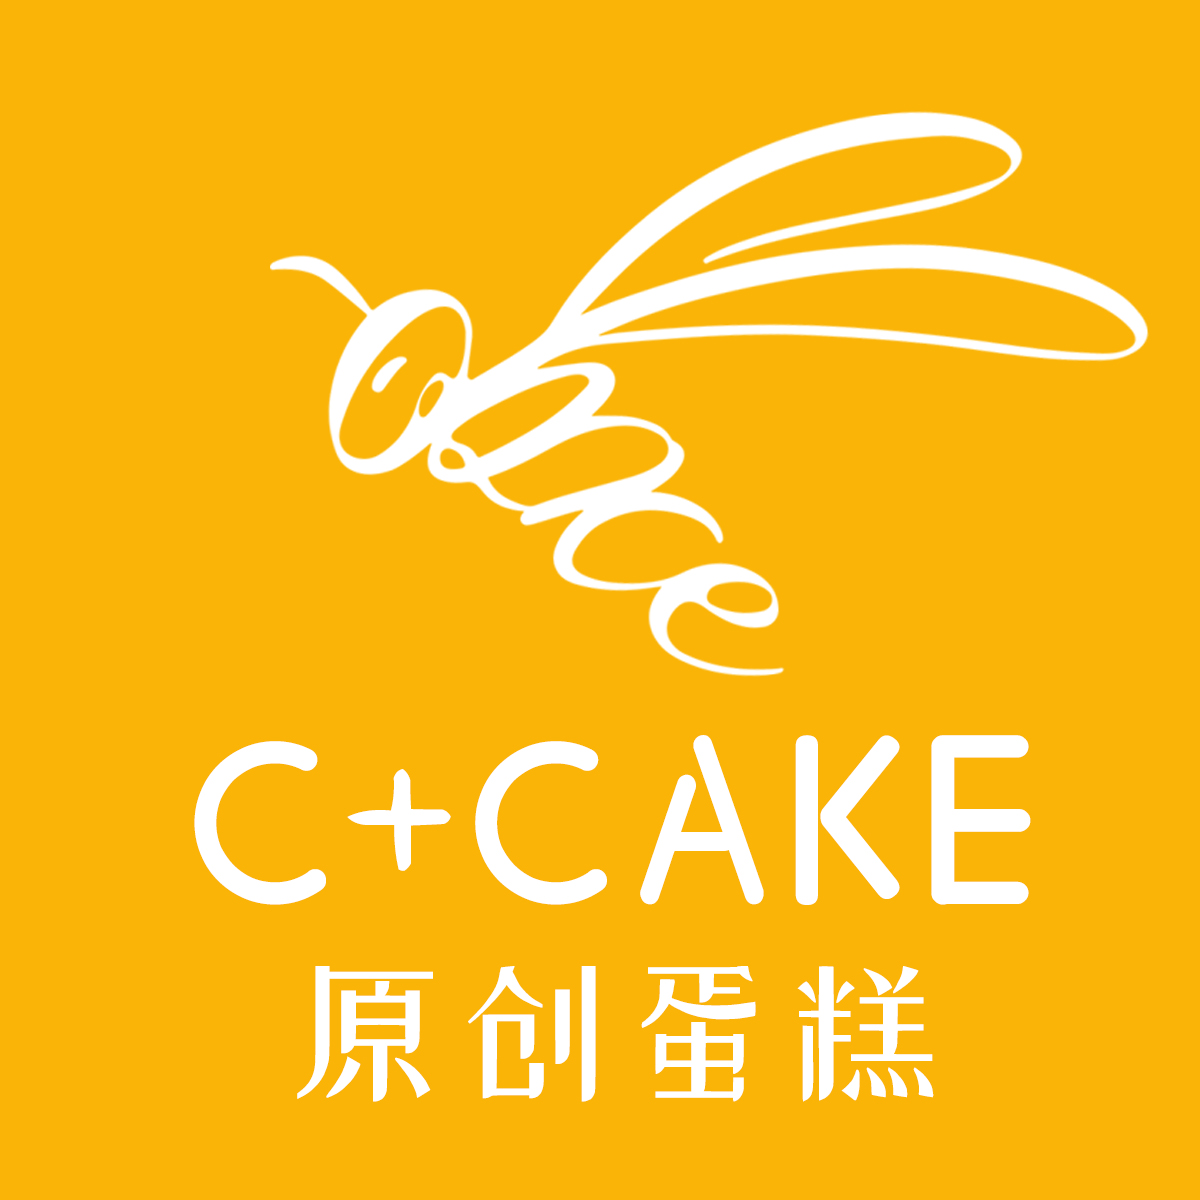 C CAKE